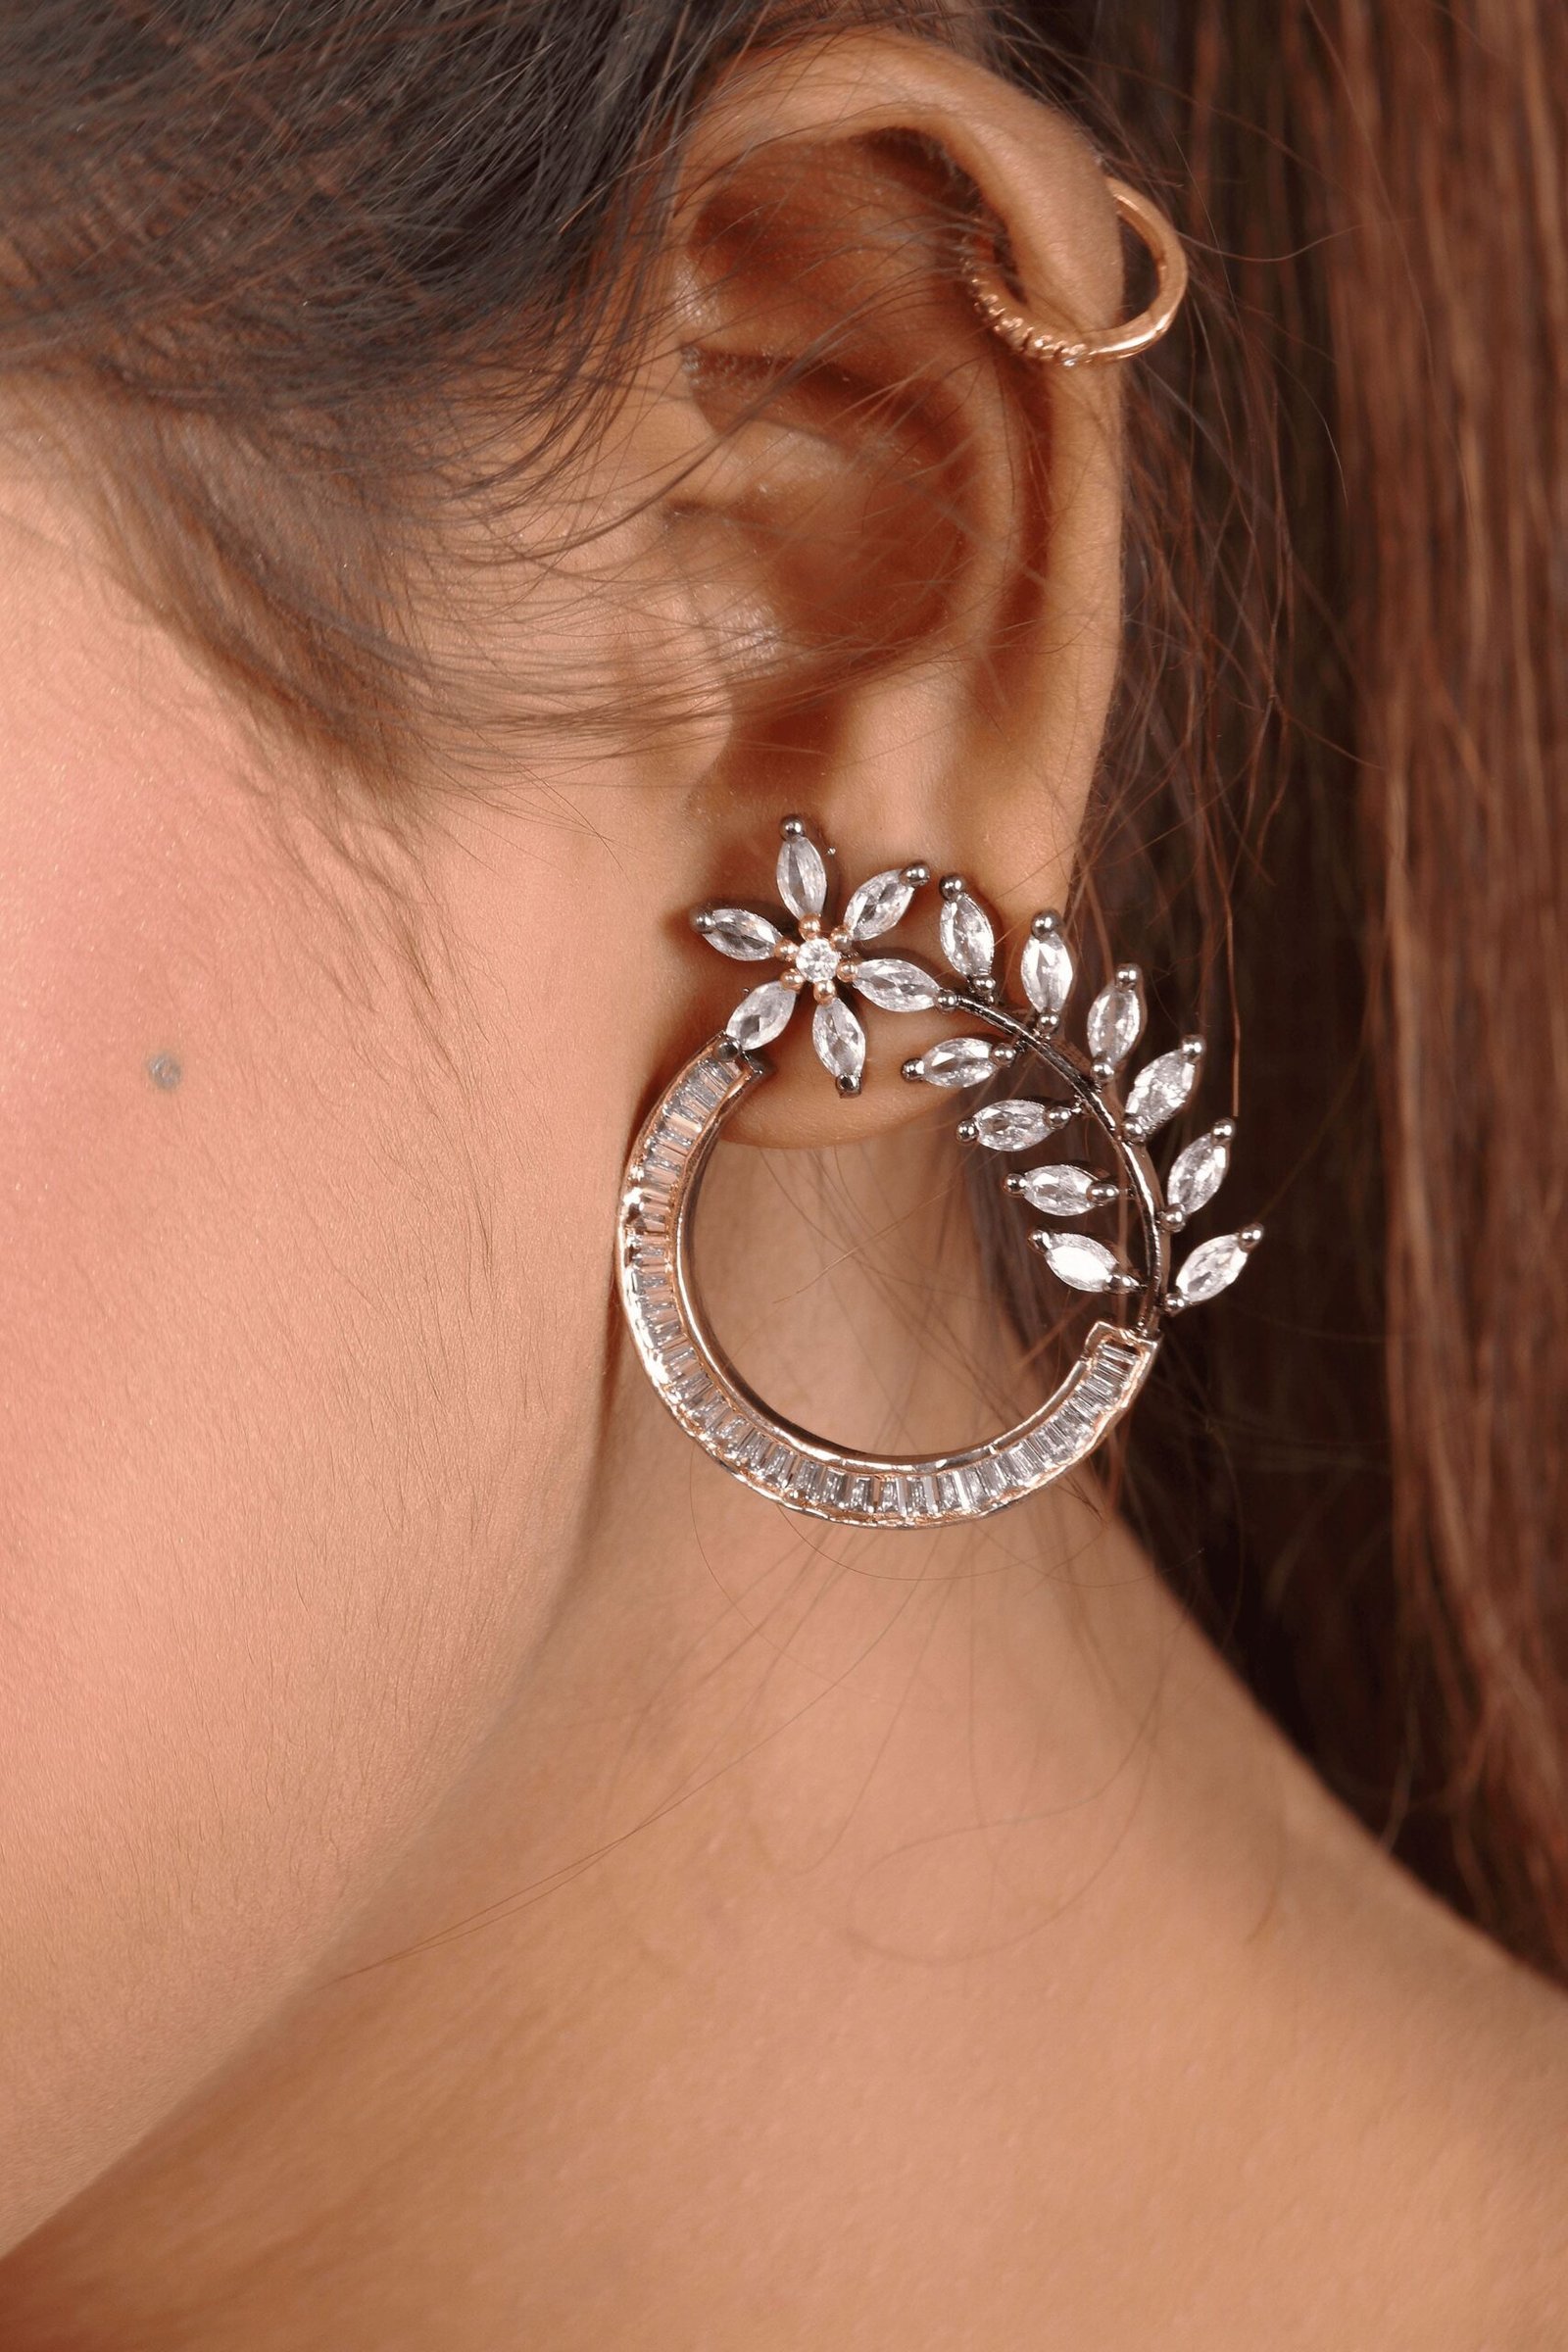 The woman is wearing an American diamond stud earrings in her left ear